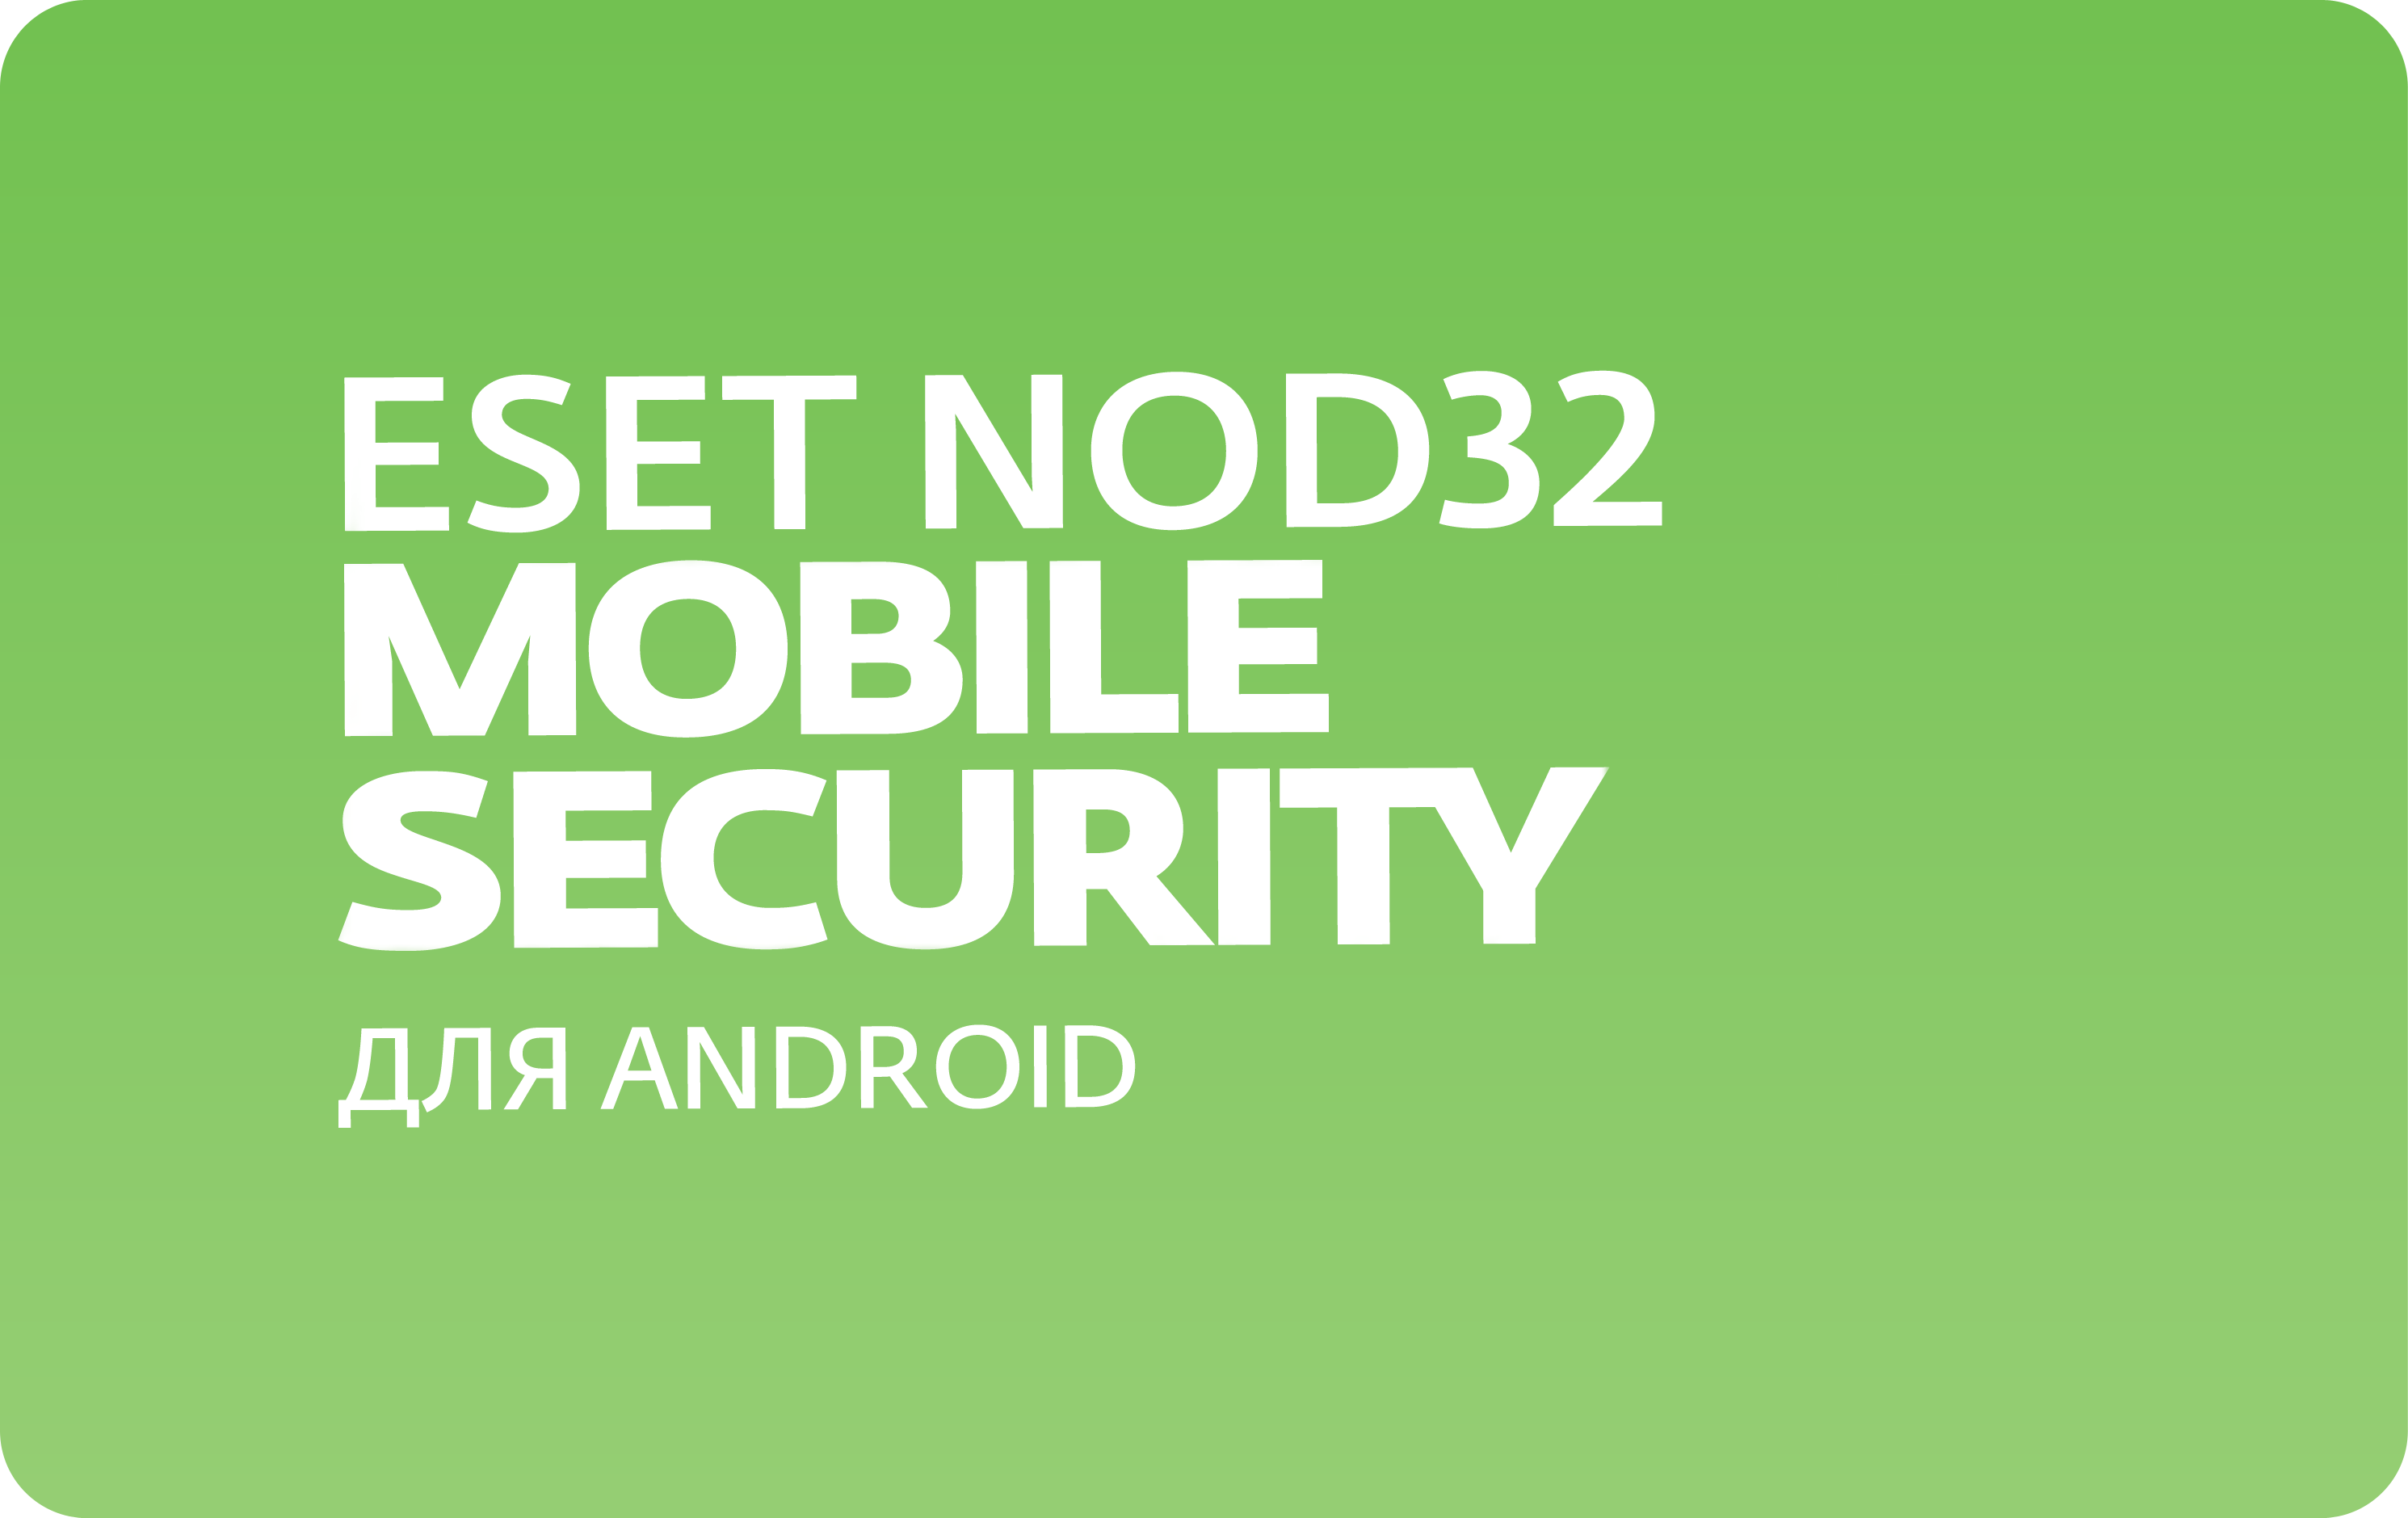 Антивирус ESET NOD32 Mobile Security для Android, базовая лицензия, Russian, 1 лицензия, 3 устройства, на 12 месяцев, электронный ключ (NOD32-ENM2-NS(EKEY)-1-1) Высылается на почту после оплаты!